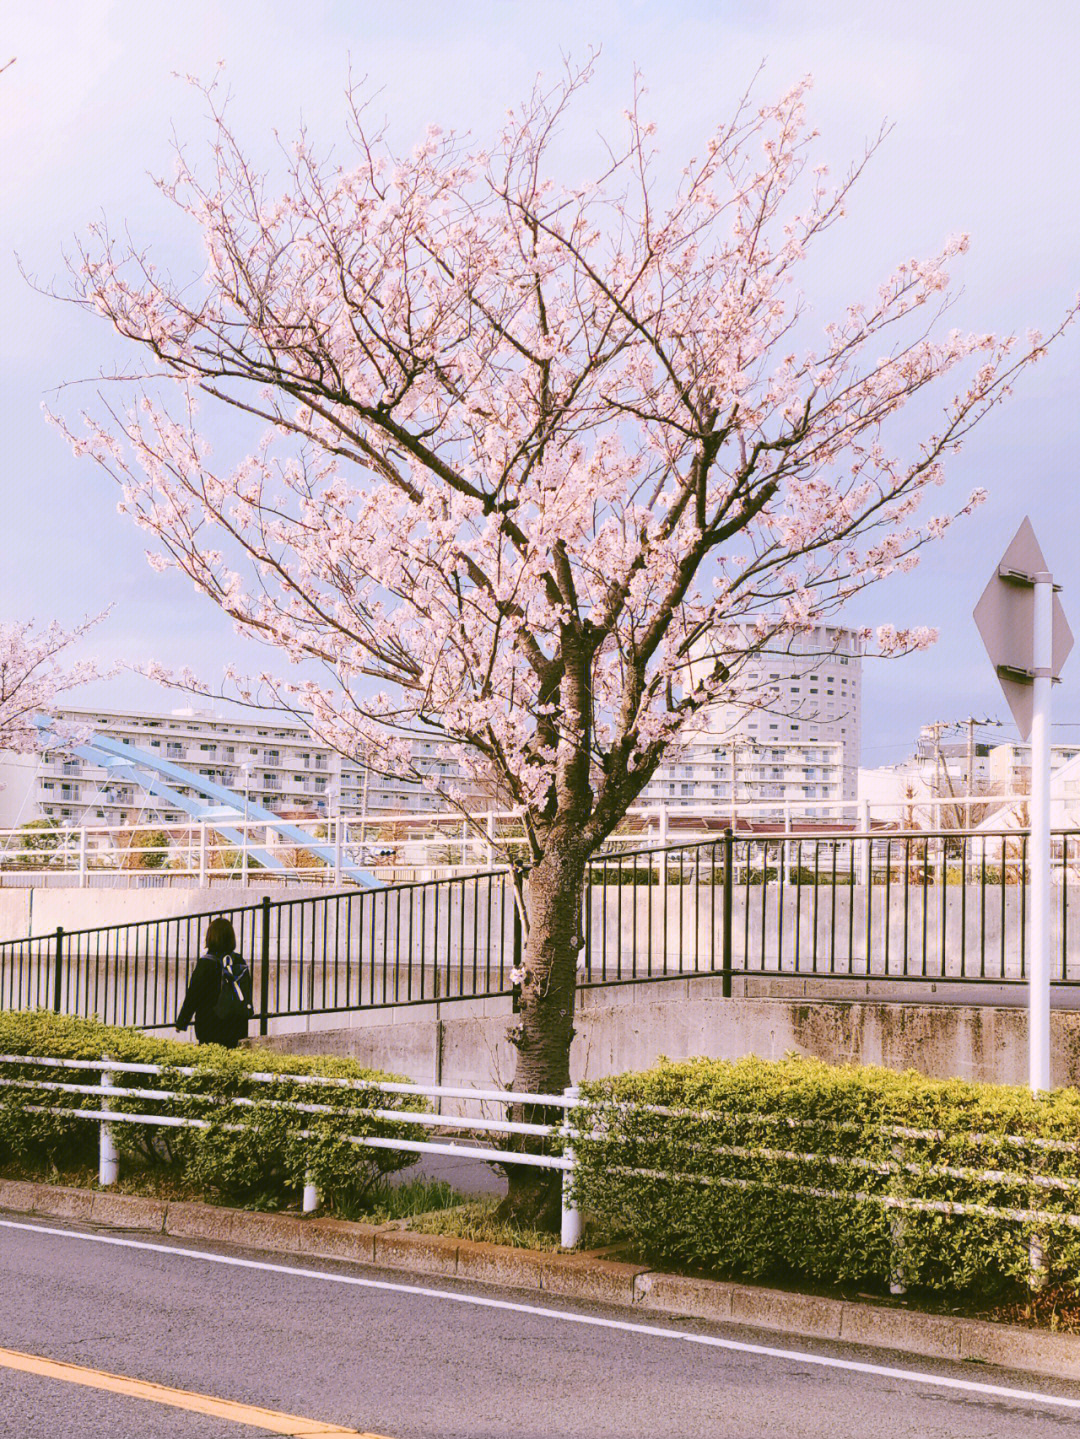 日本街道边的樱花你确定不来看看嘛